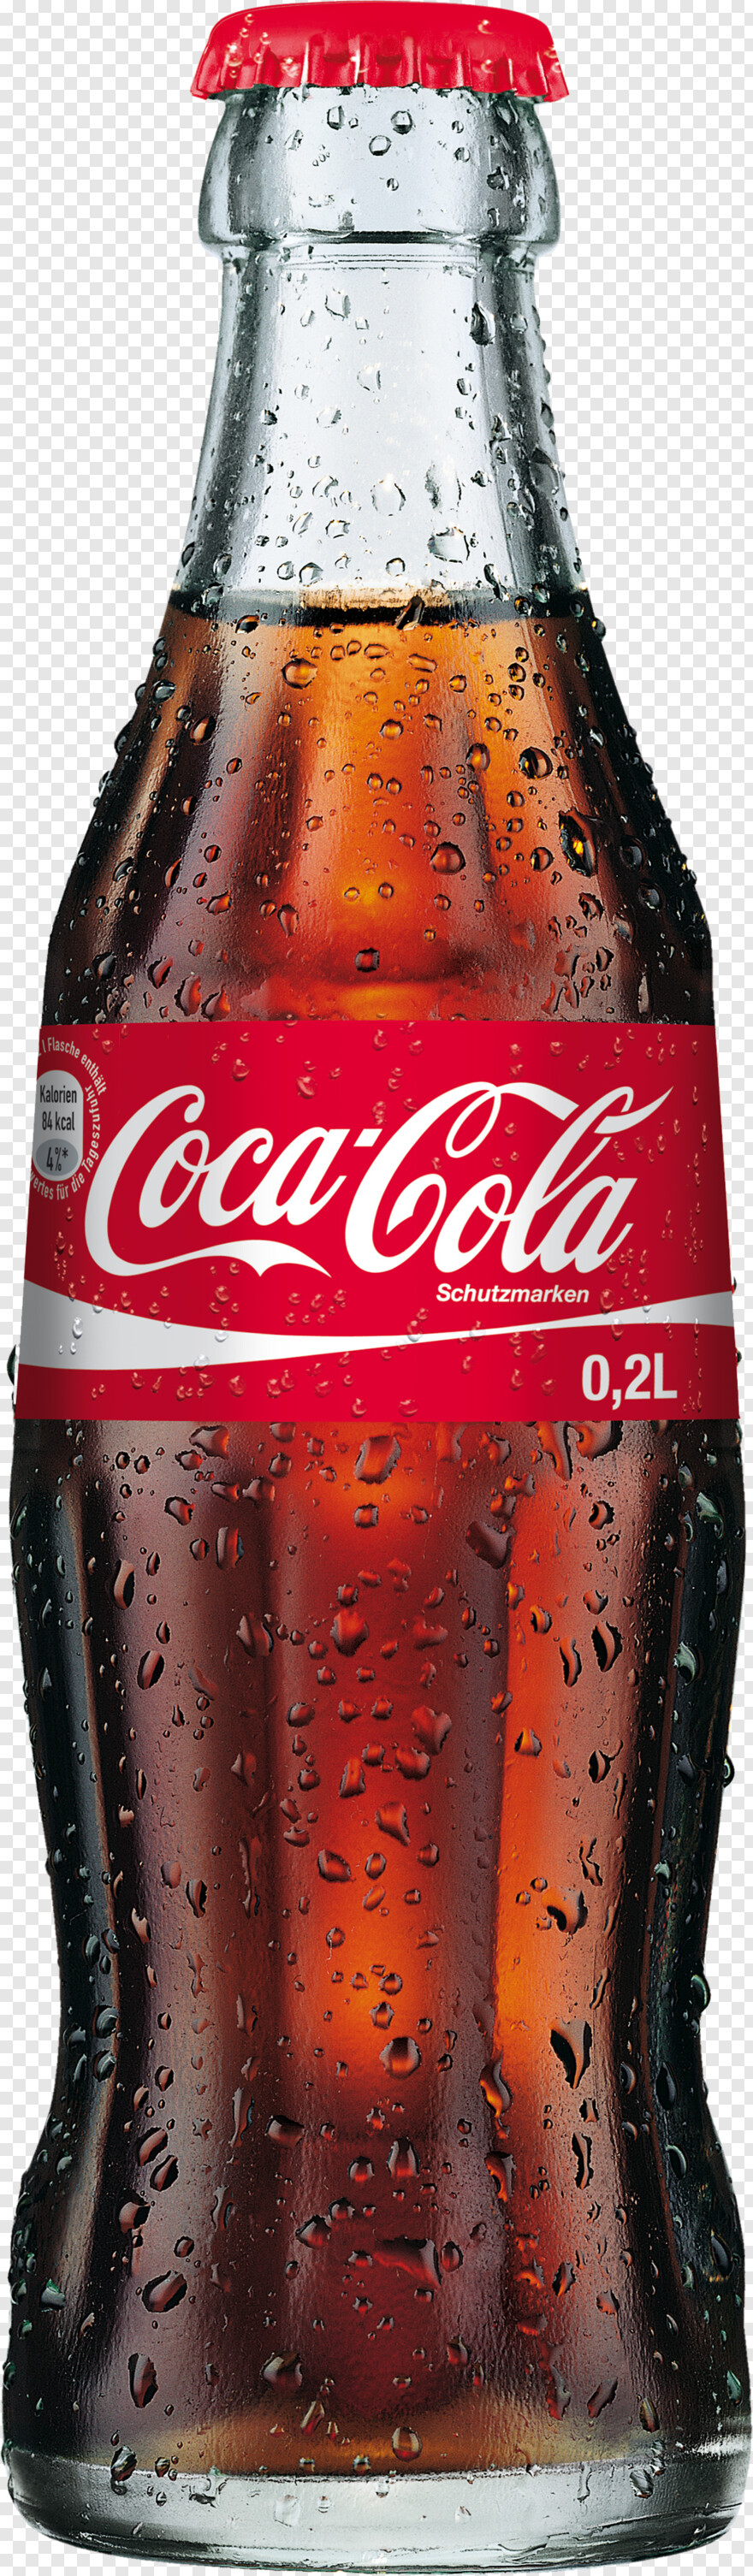 coca-cola-bottle # 326641